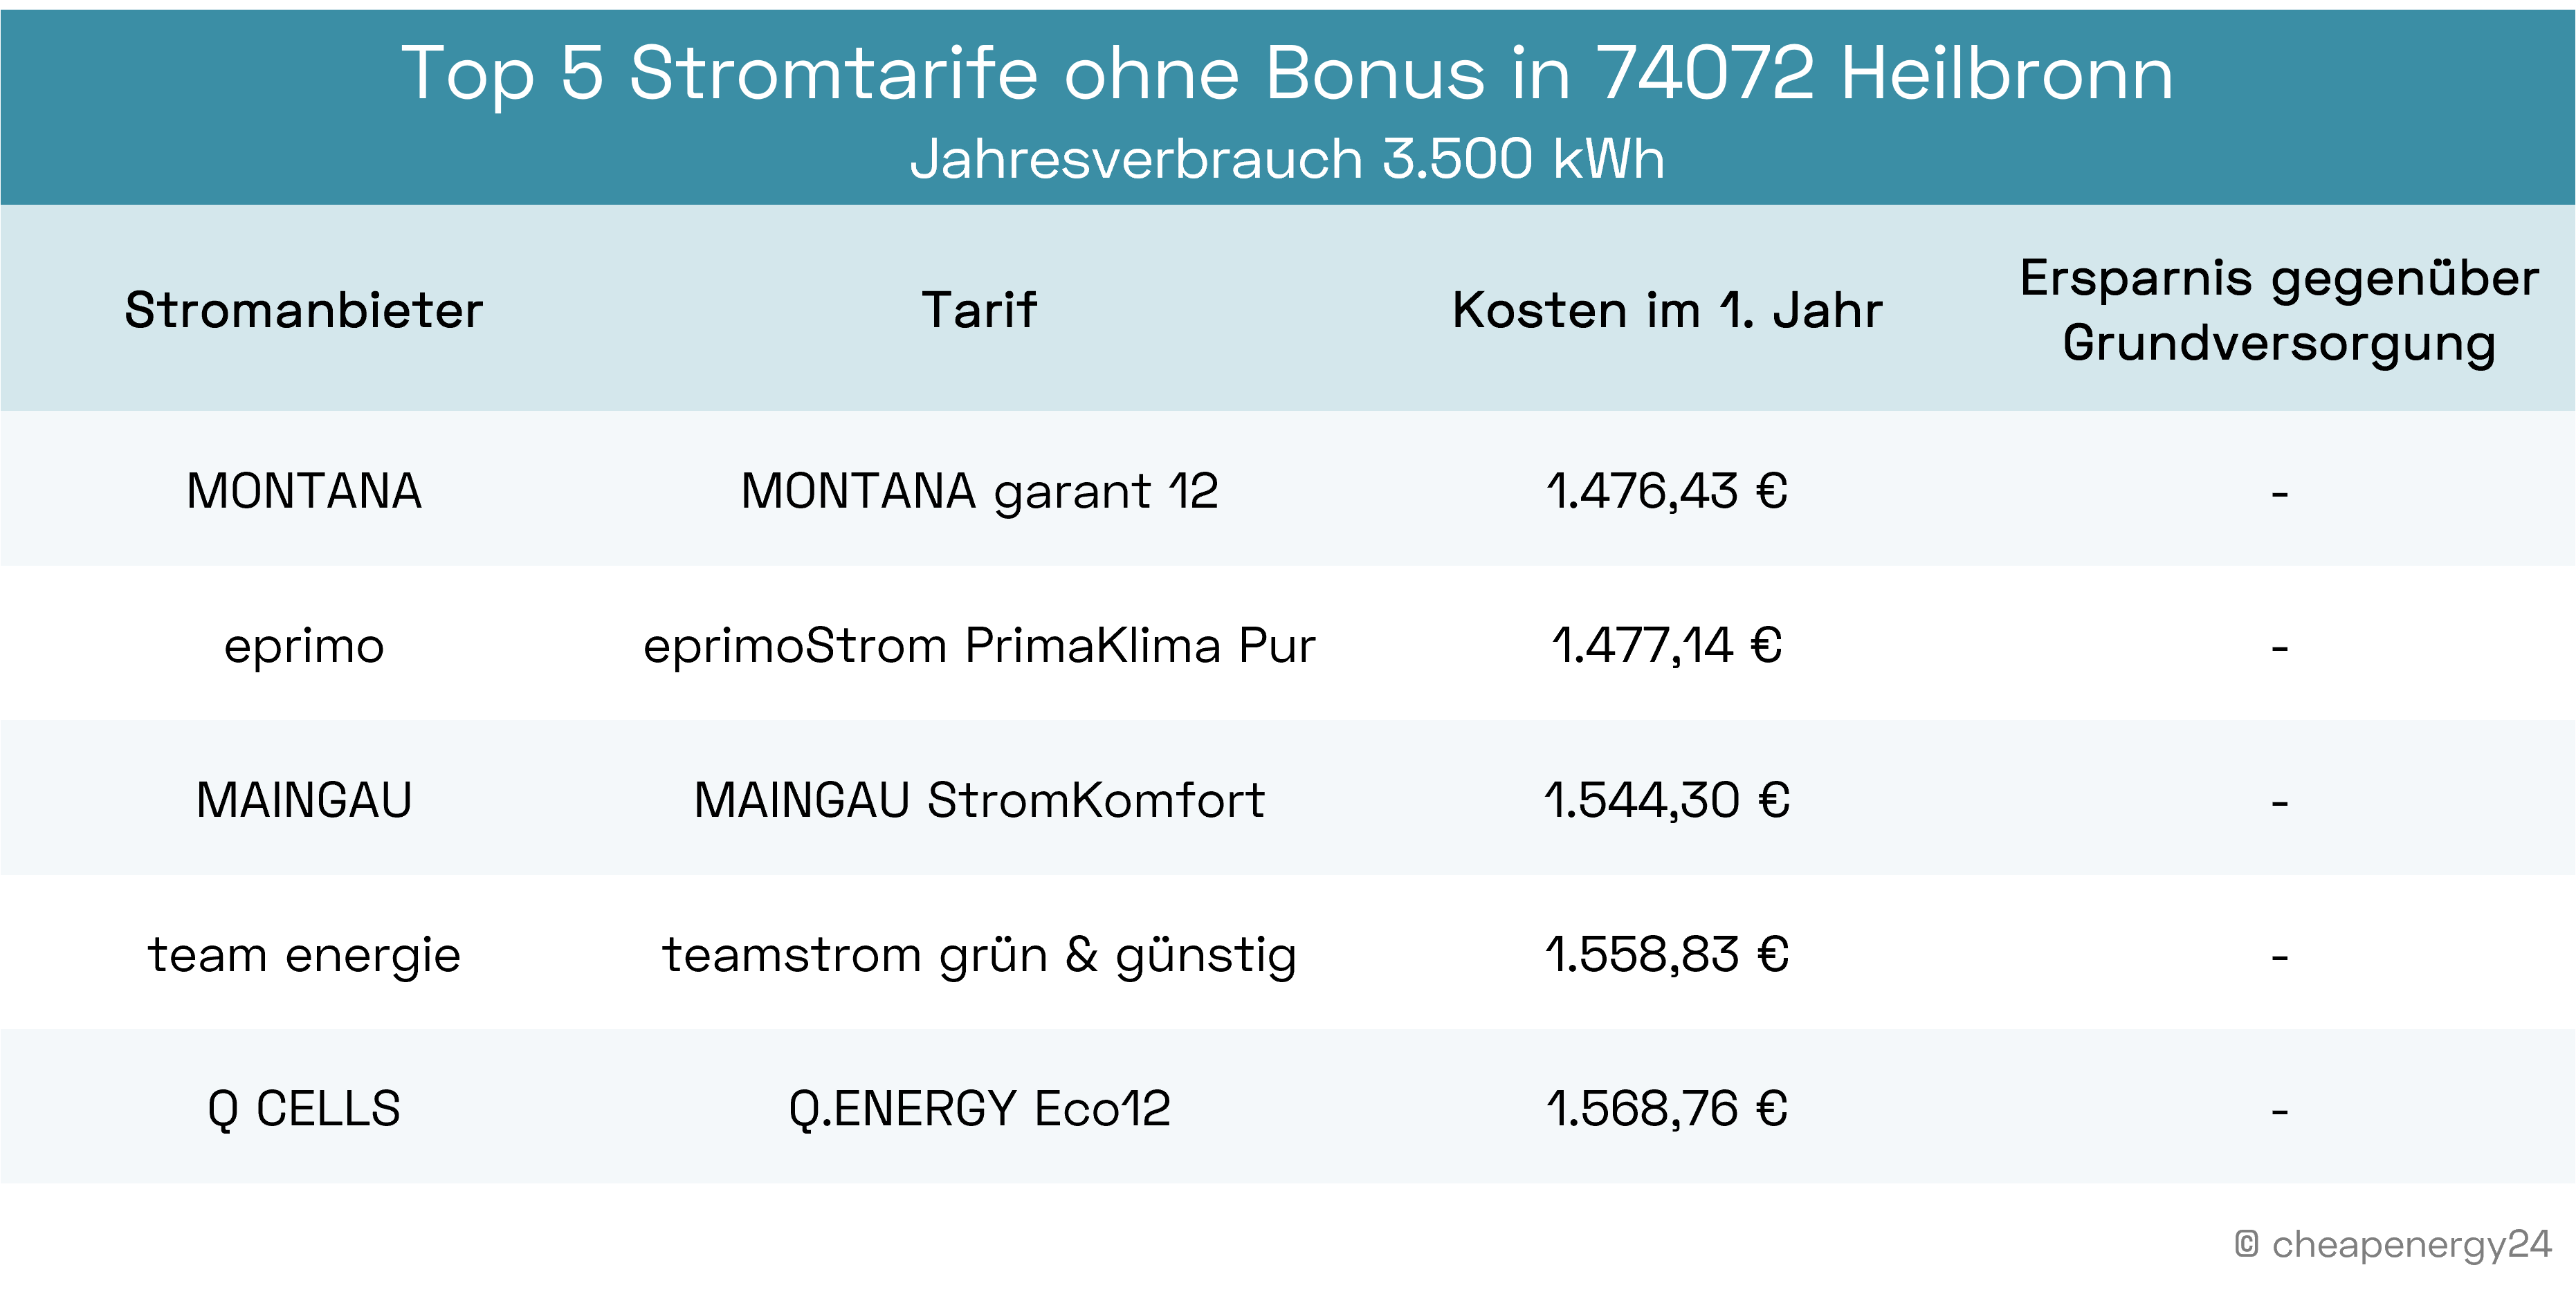 Die besten Stromtarife ohne Bonus in Heilbronn